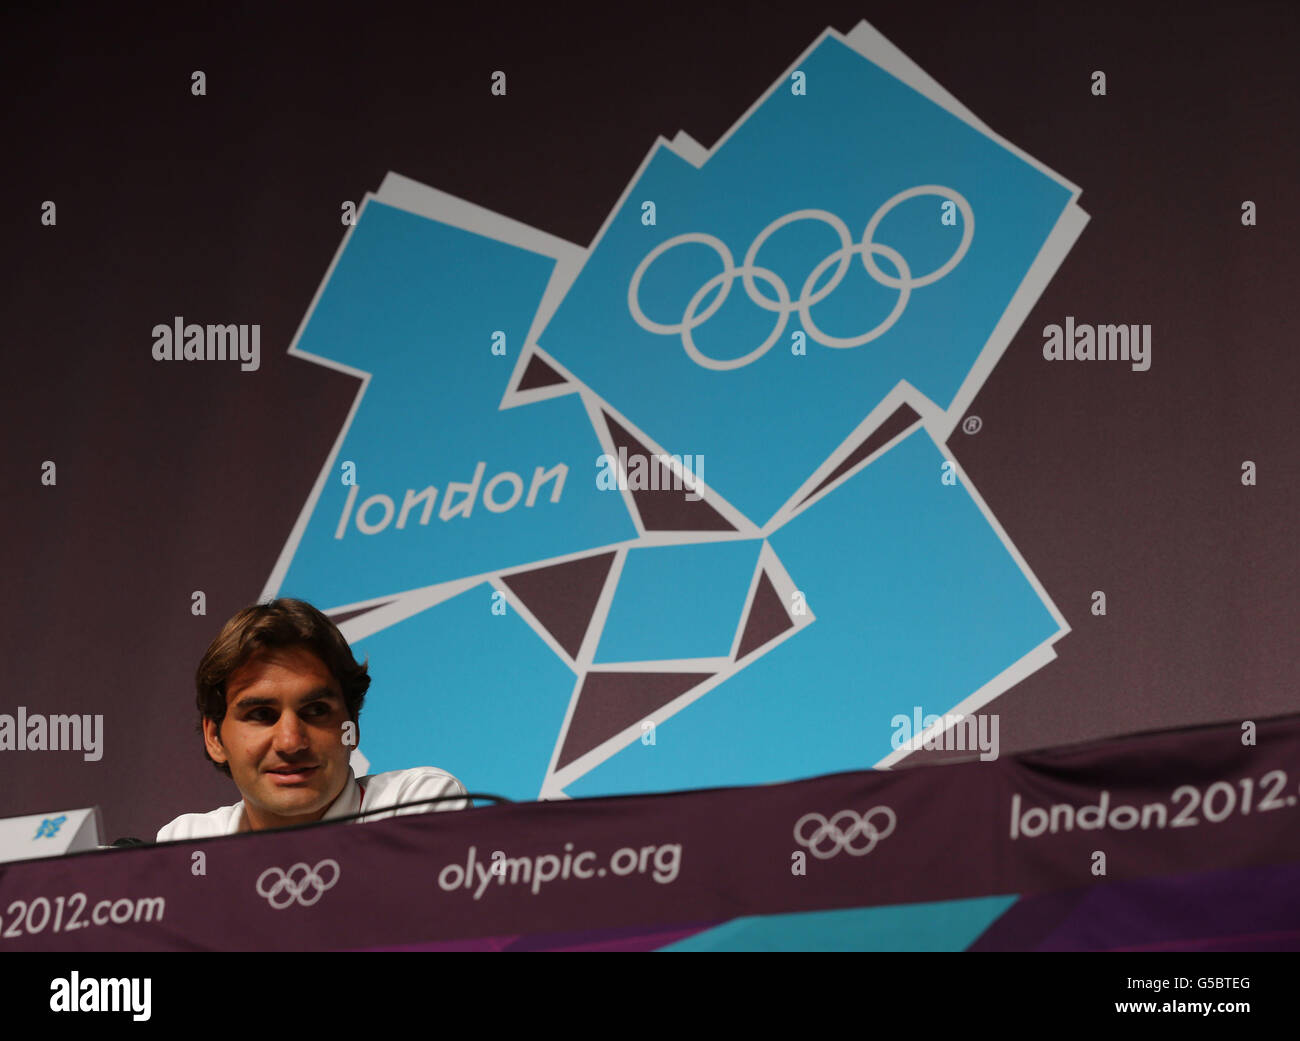 Olympische Spiele In London - Aktivitäten Vor Den Spielen - Donnerstag. Der Schweizer Roger Federer bei der Pressekonferenz im MPC, Olympic Park, London. Stockfoto